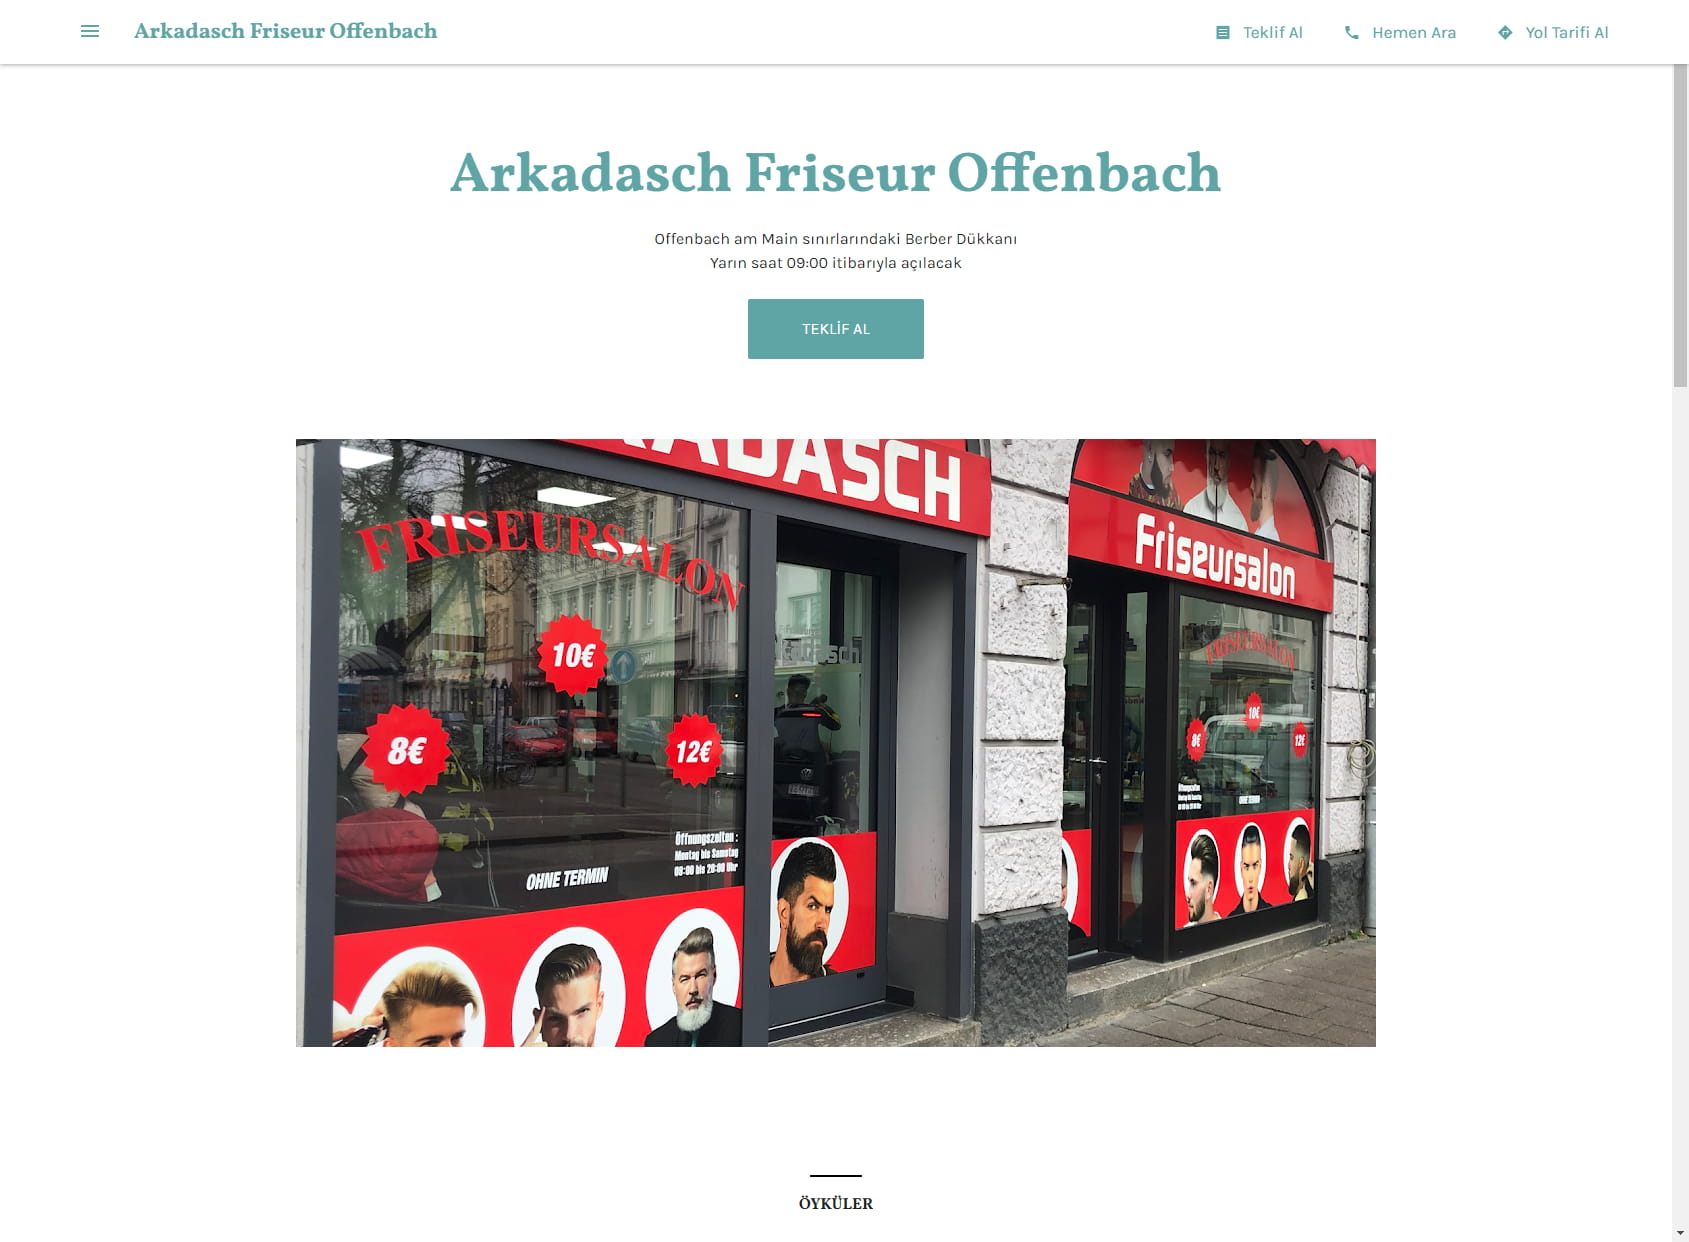 Arkadasch Friseur Offenbach